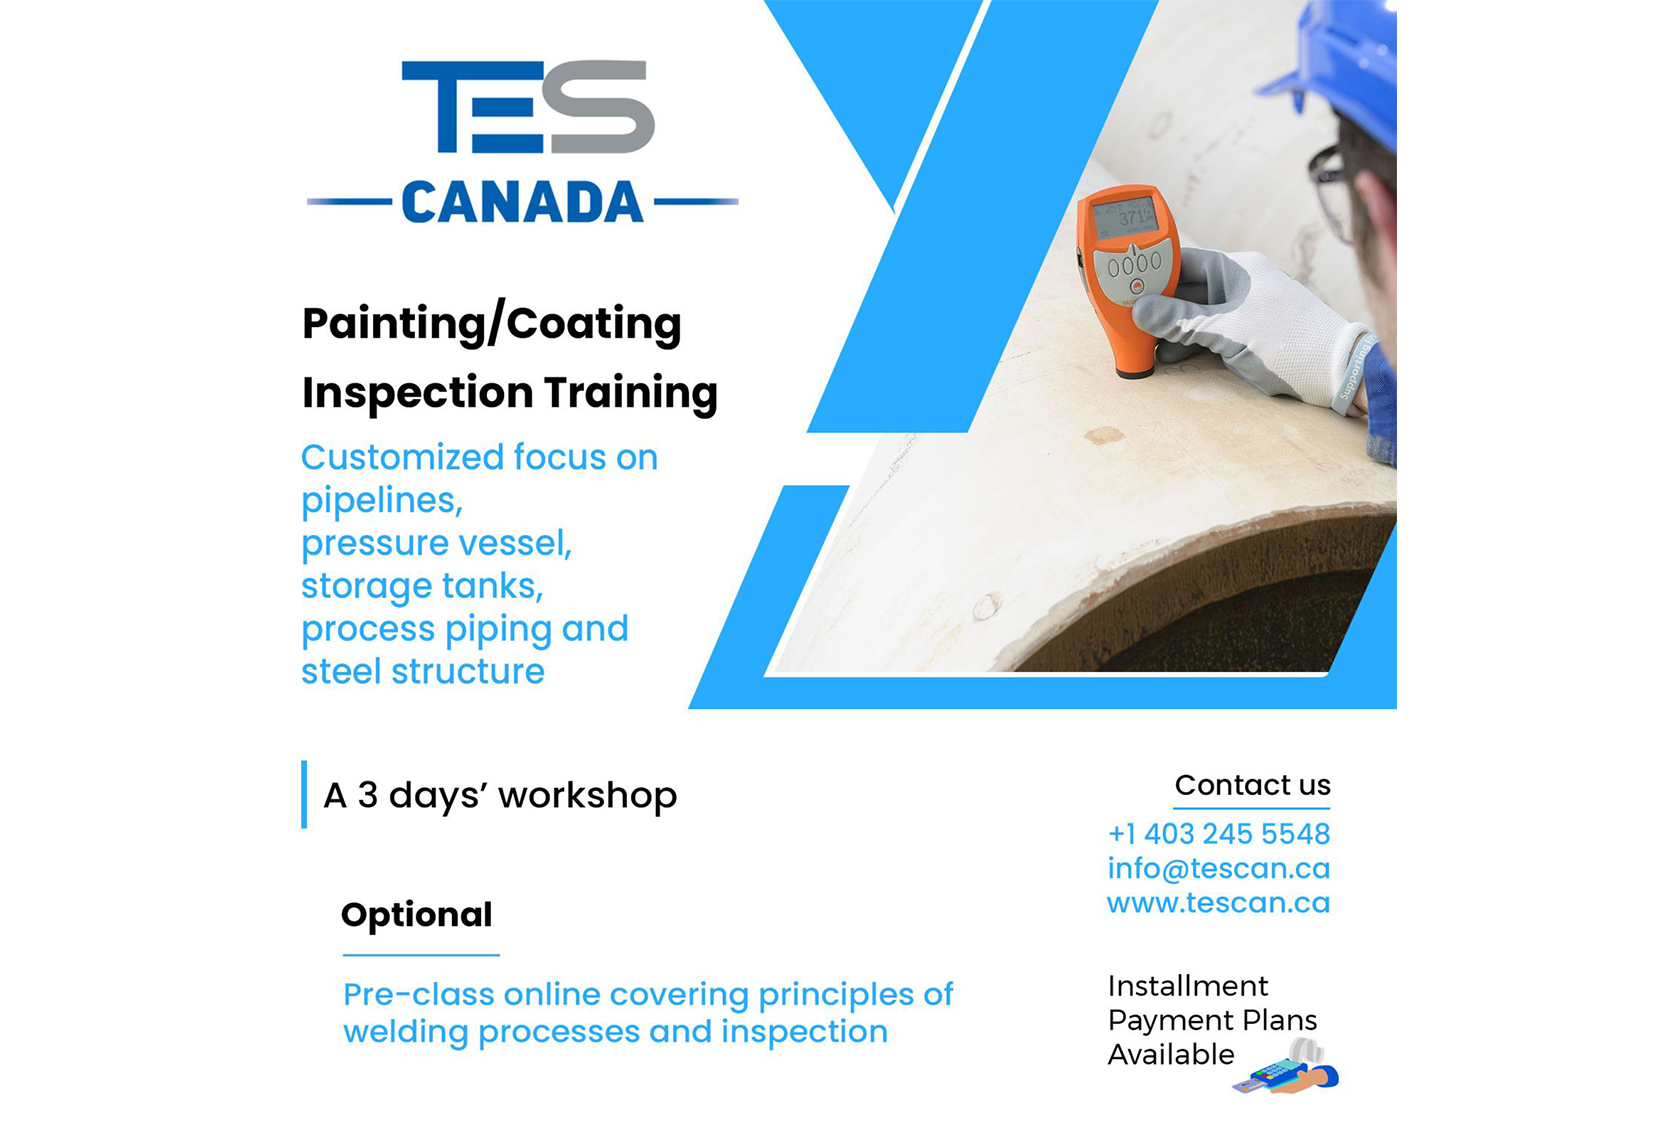 Painting/coating inspection training customized